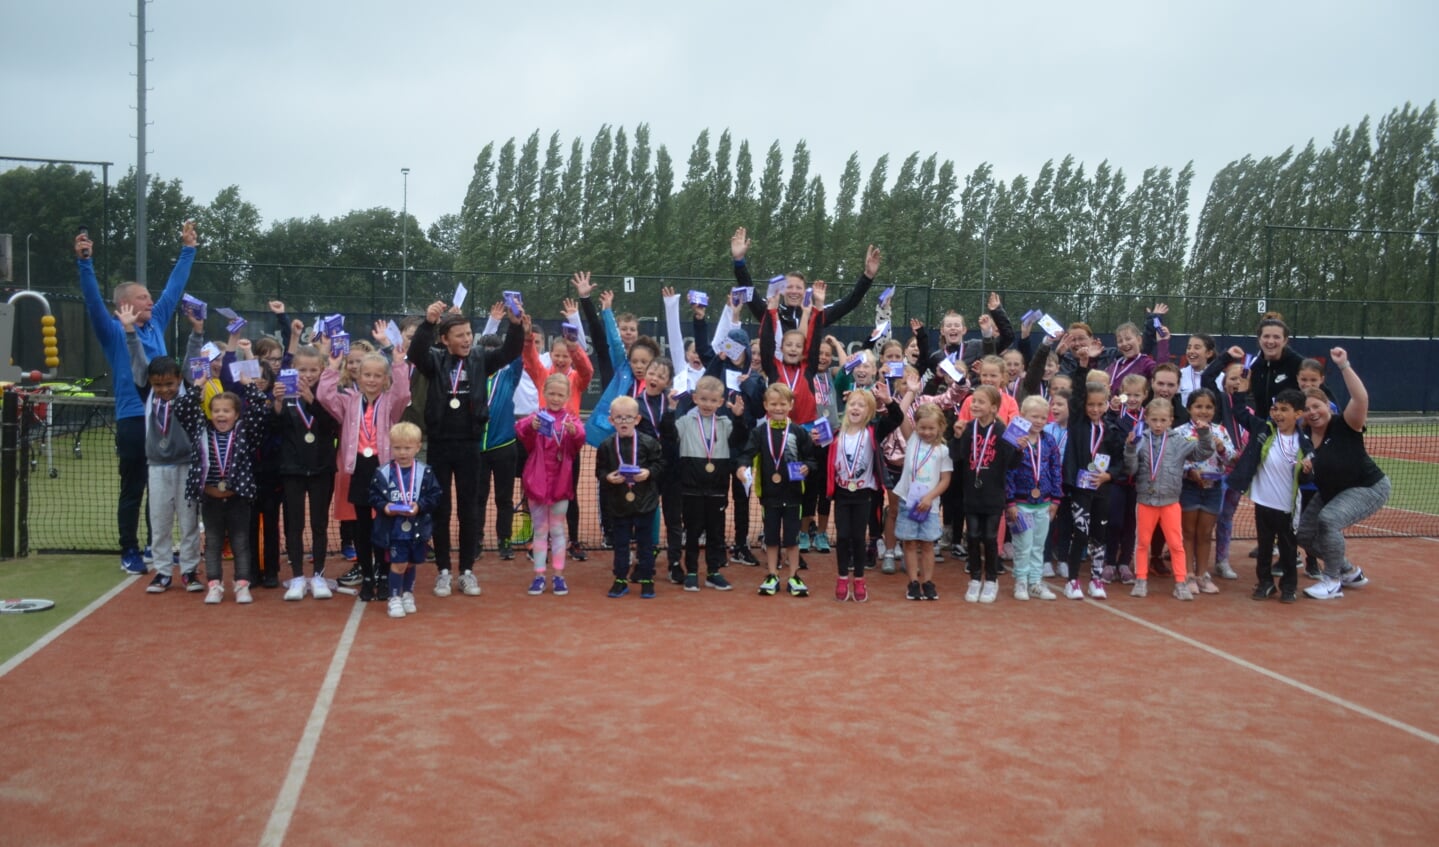 De jeugd had plezier in het tennisfeest waarmee de grote schoolvakantie werd begroet.